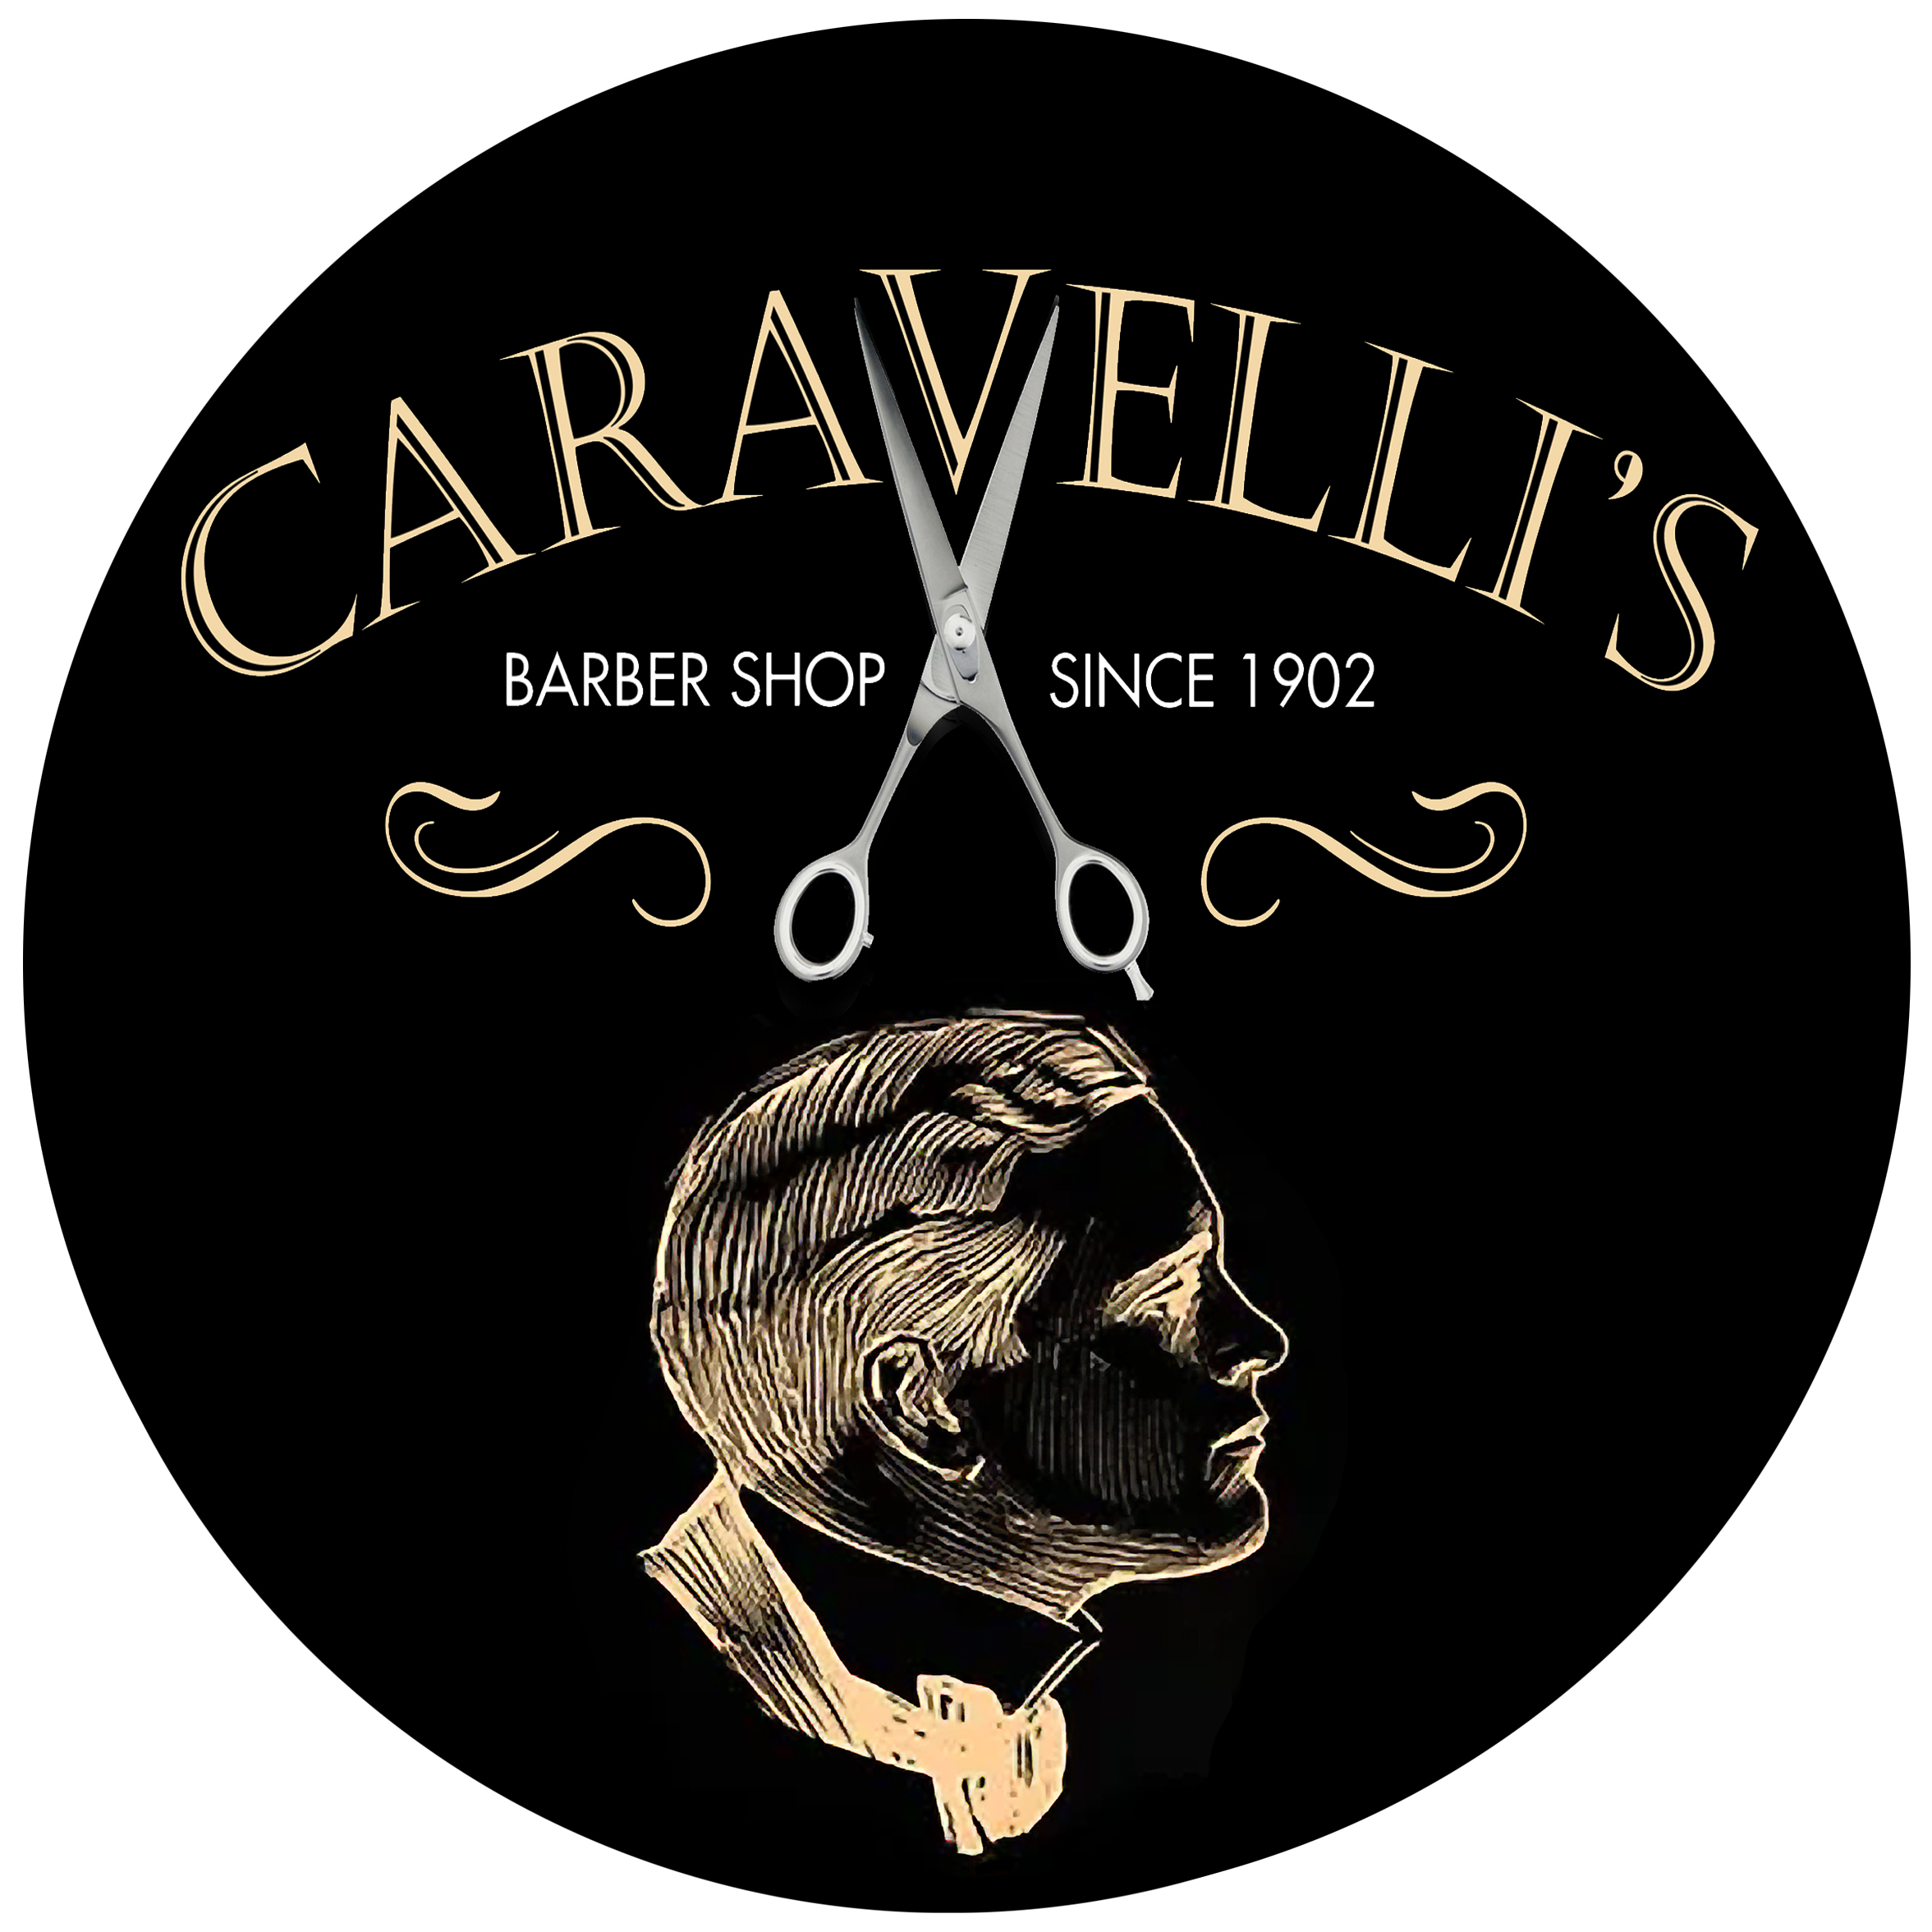 Caravelli"s Barber Shop logo